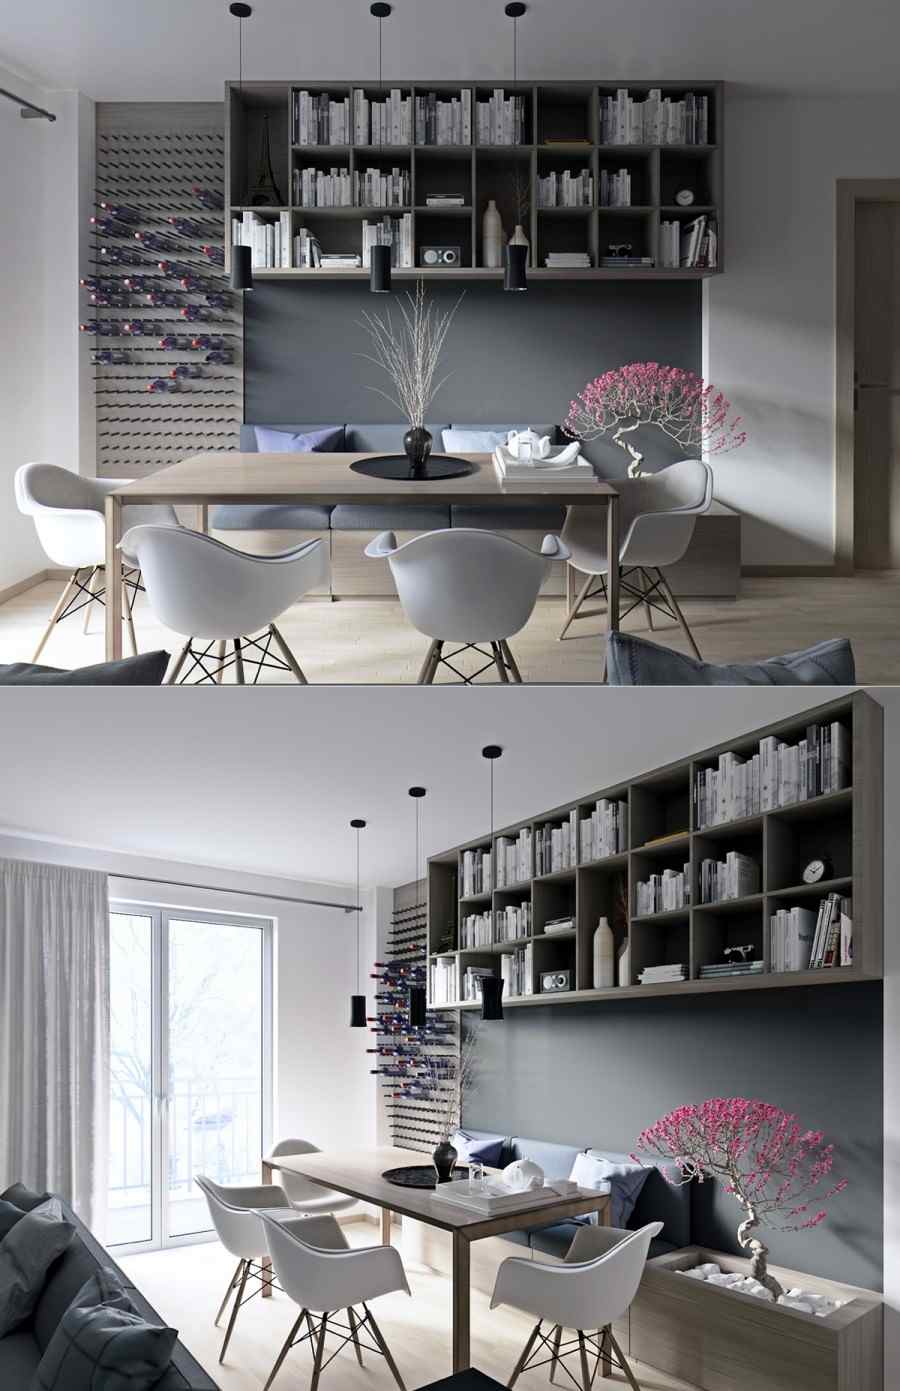 salle à manger contemporaine intérieur moderne appart design chaise blanche table en bois bibliothèque